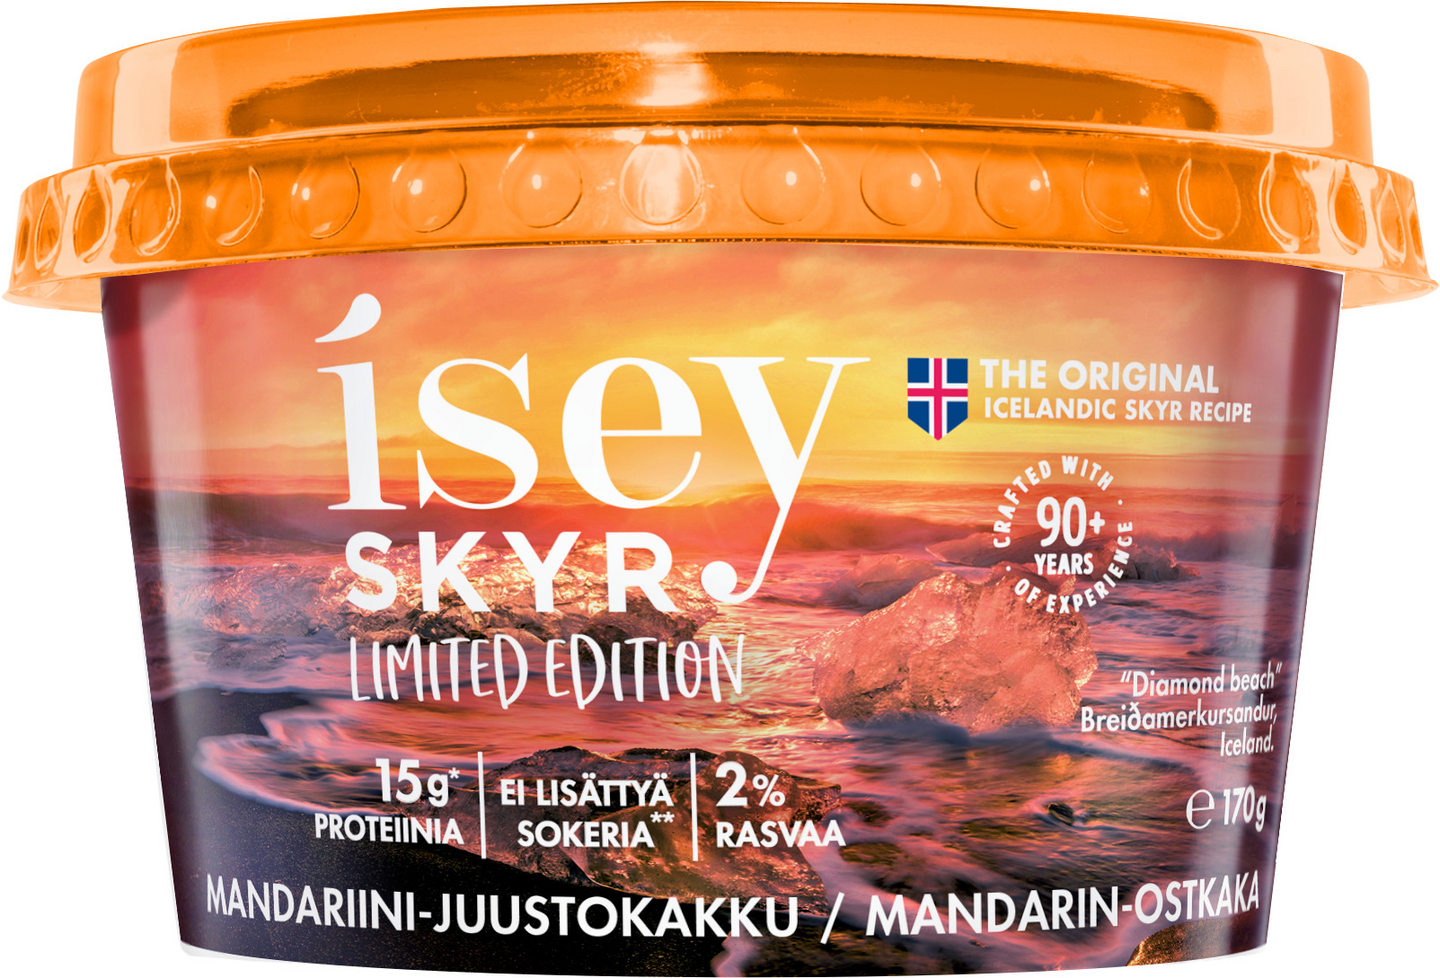 Isey Skyr mandariini-juustokakku limited edition 170g